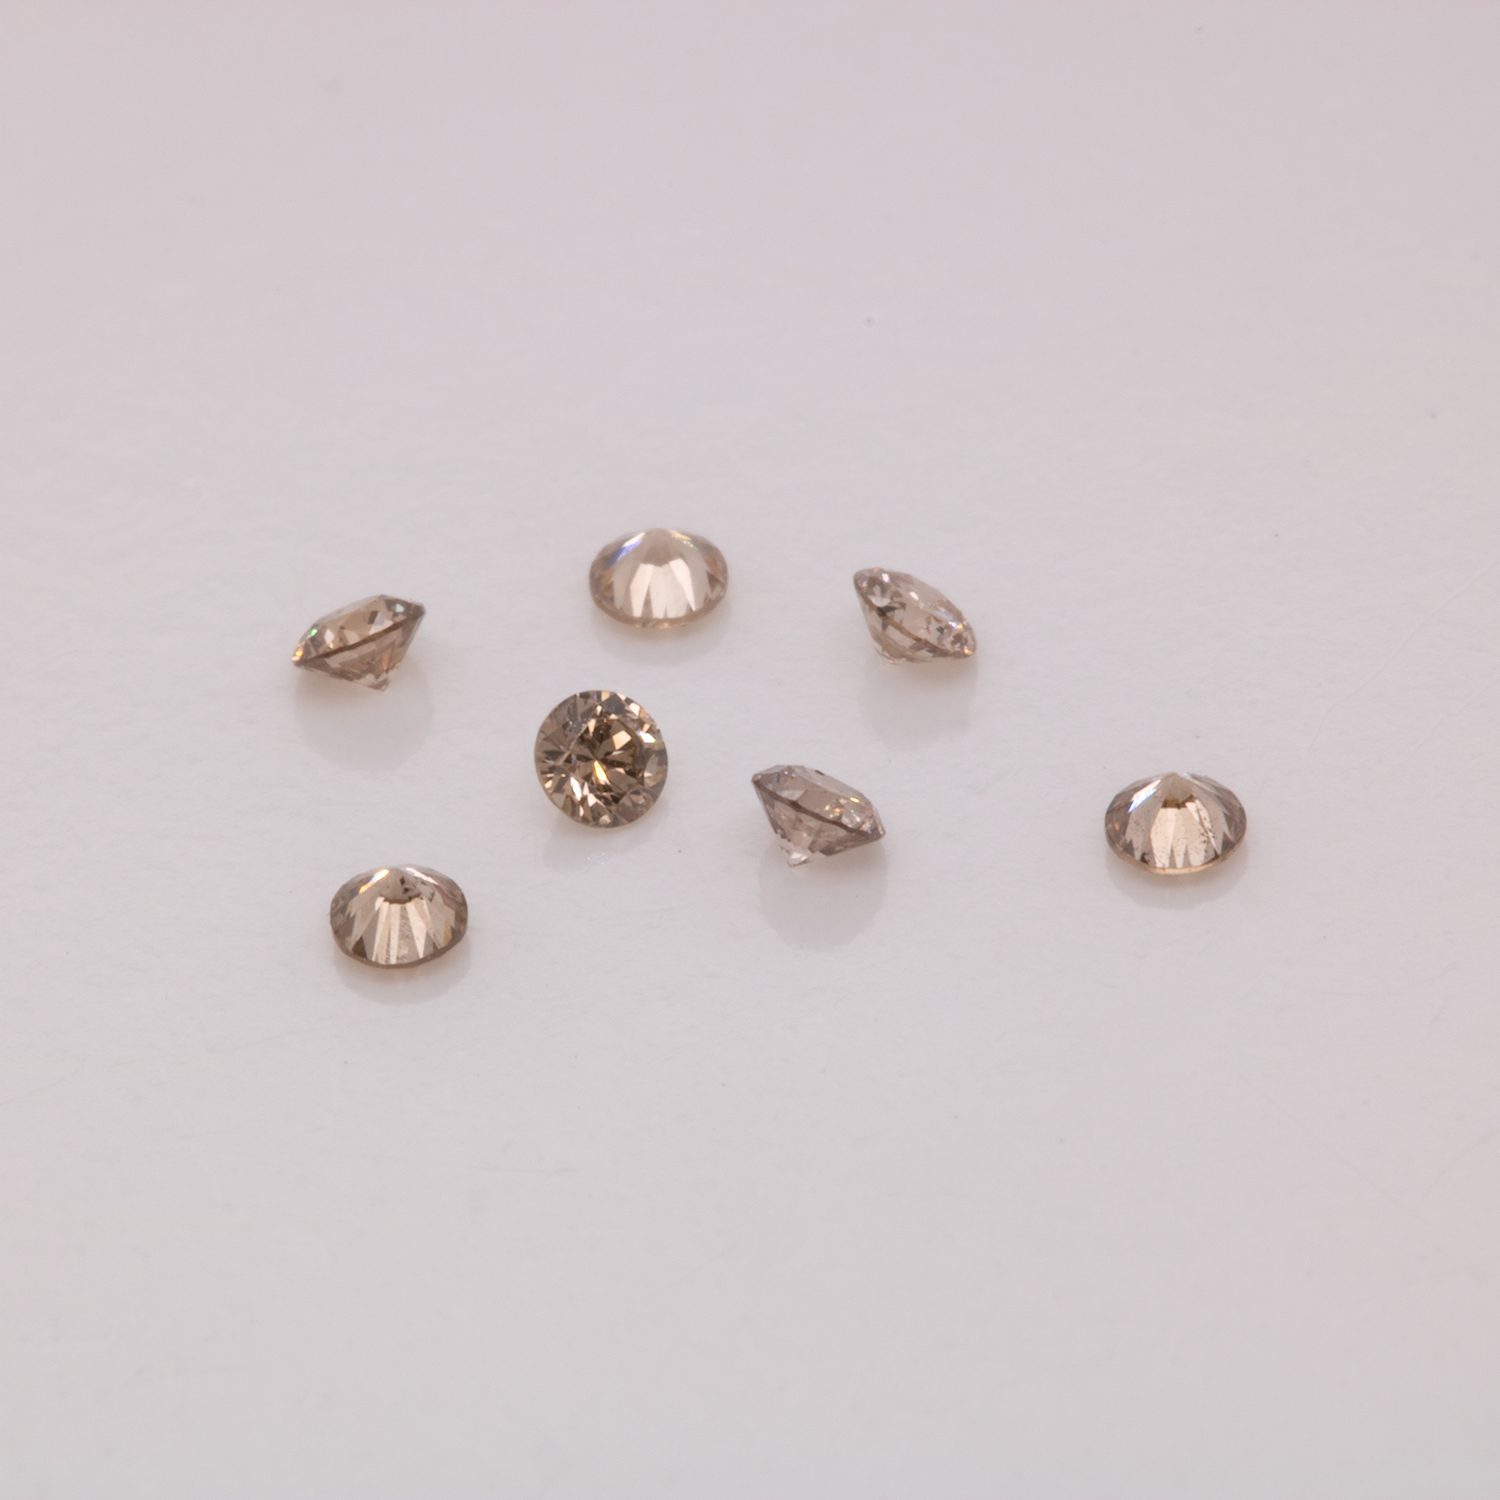 Diamant - braun, rund, 1.3x1.3 mm, 0.01 cts, Nr. D11044